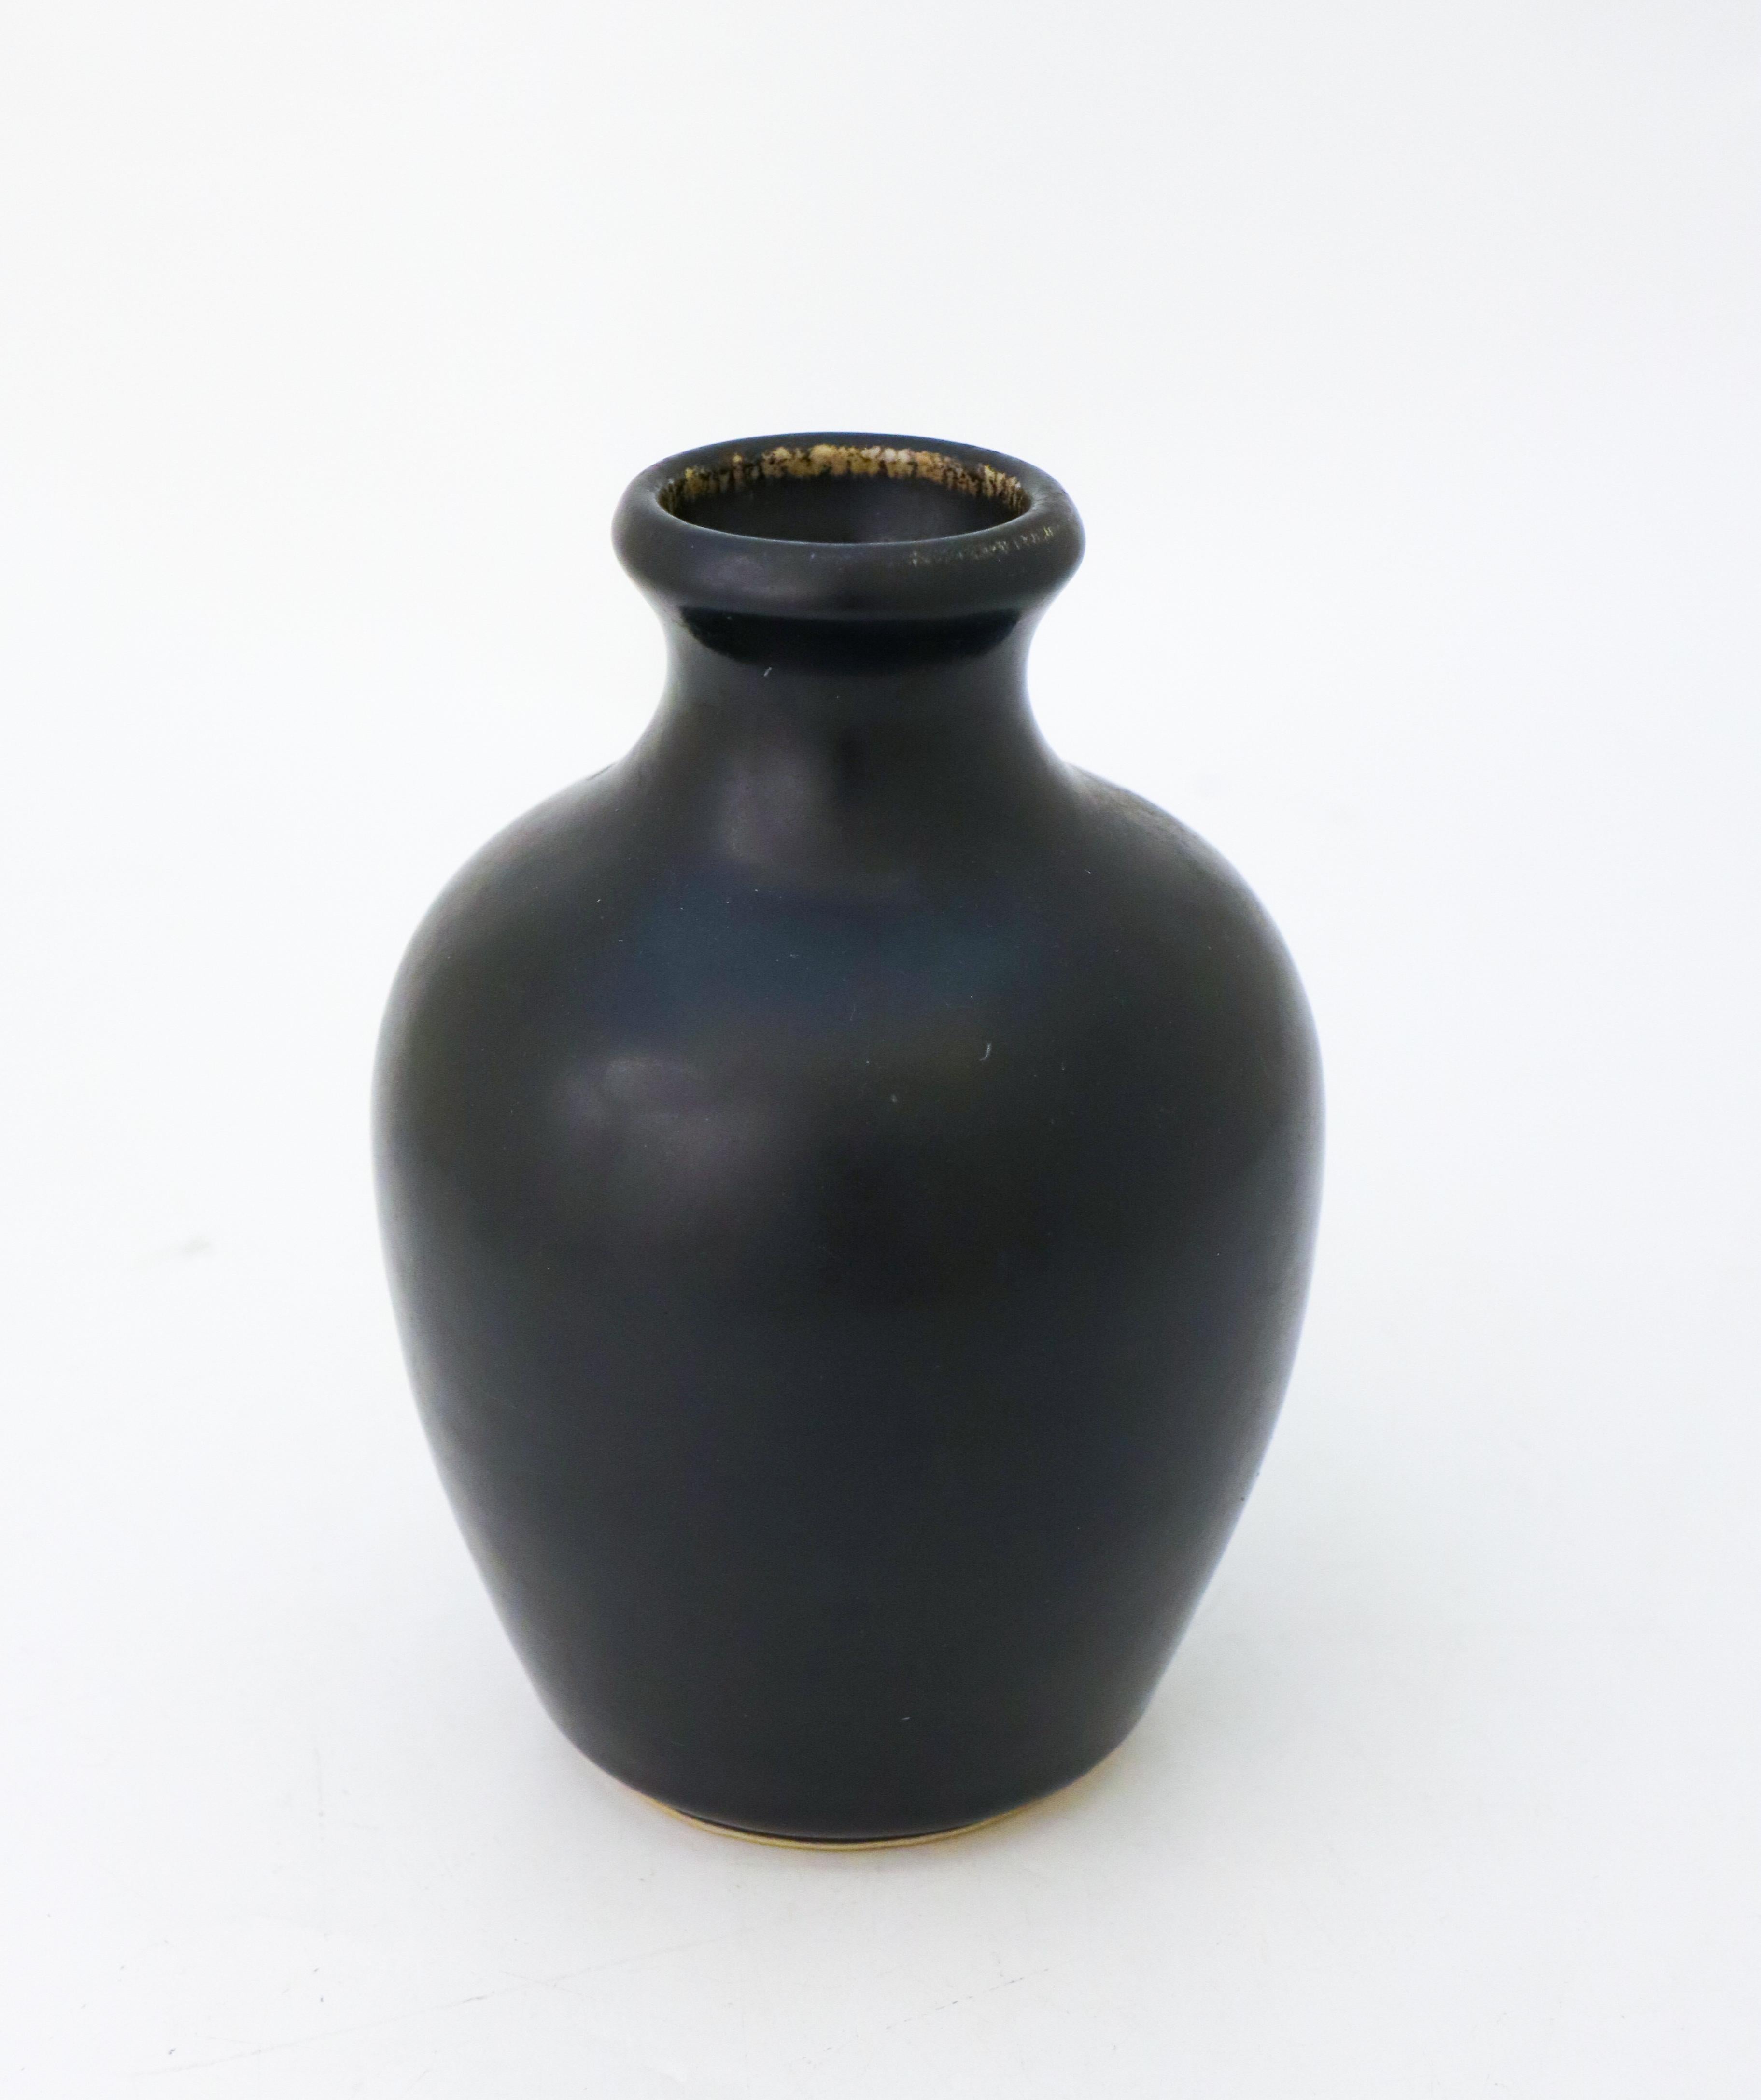 Die schwarze Vase wurde von Carl-Harry Stålhane im Rörstrand Atelier entworfen und hat eine Höhe von 16 cm (6,4